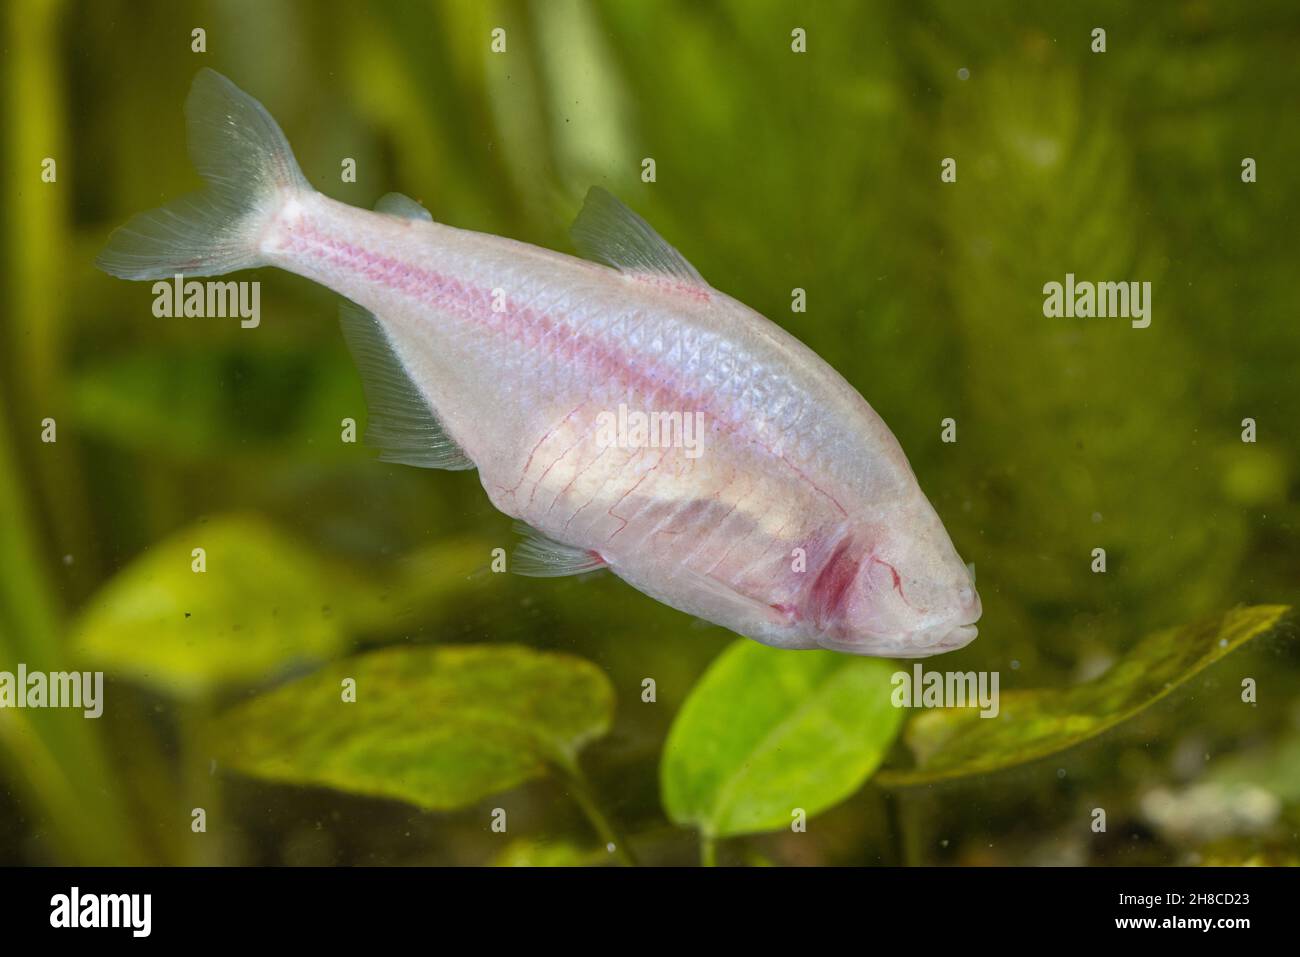 Cueva ciega, Ciega cavefish tetra (Astyanax jordani), natación Foto de stock